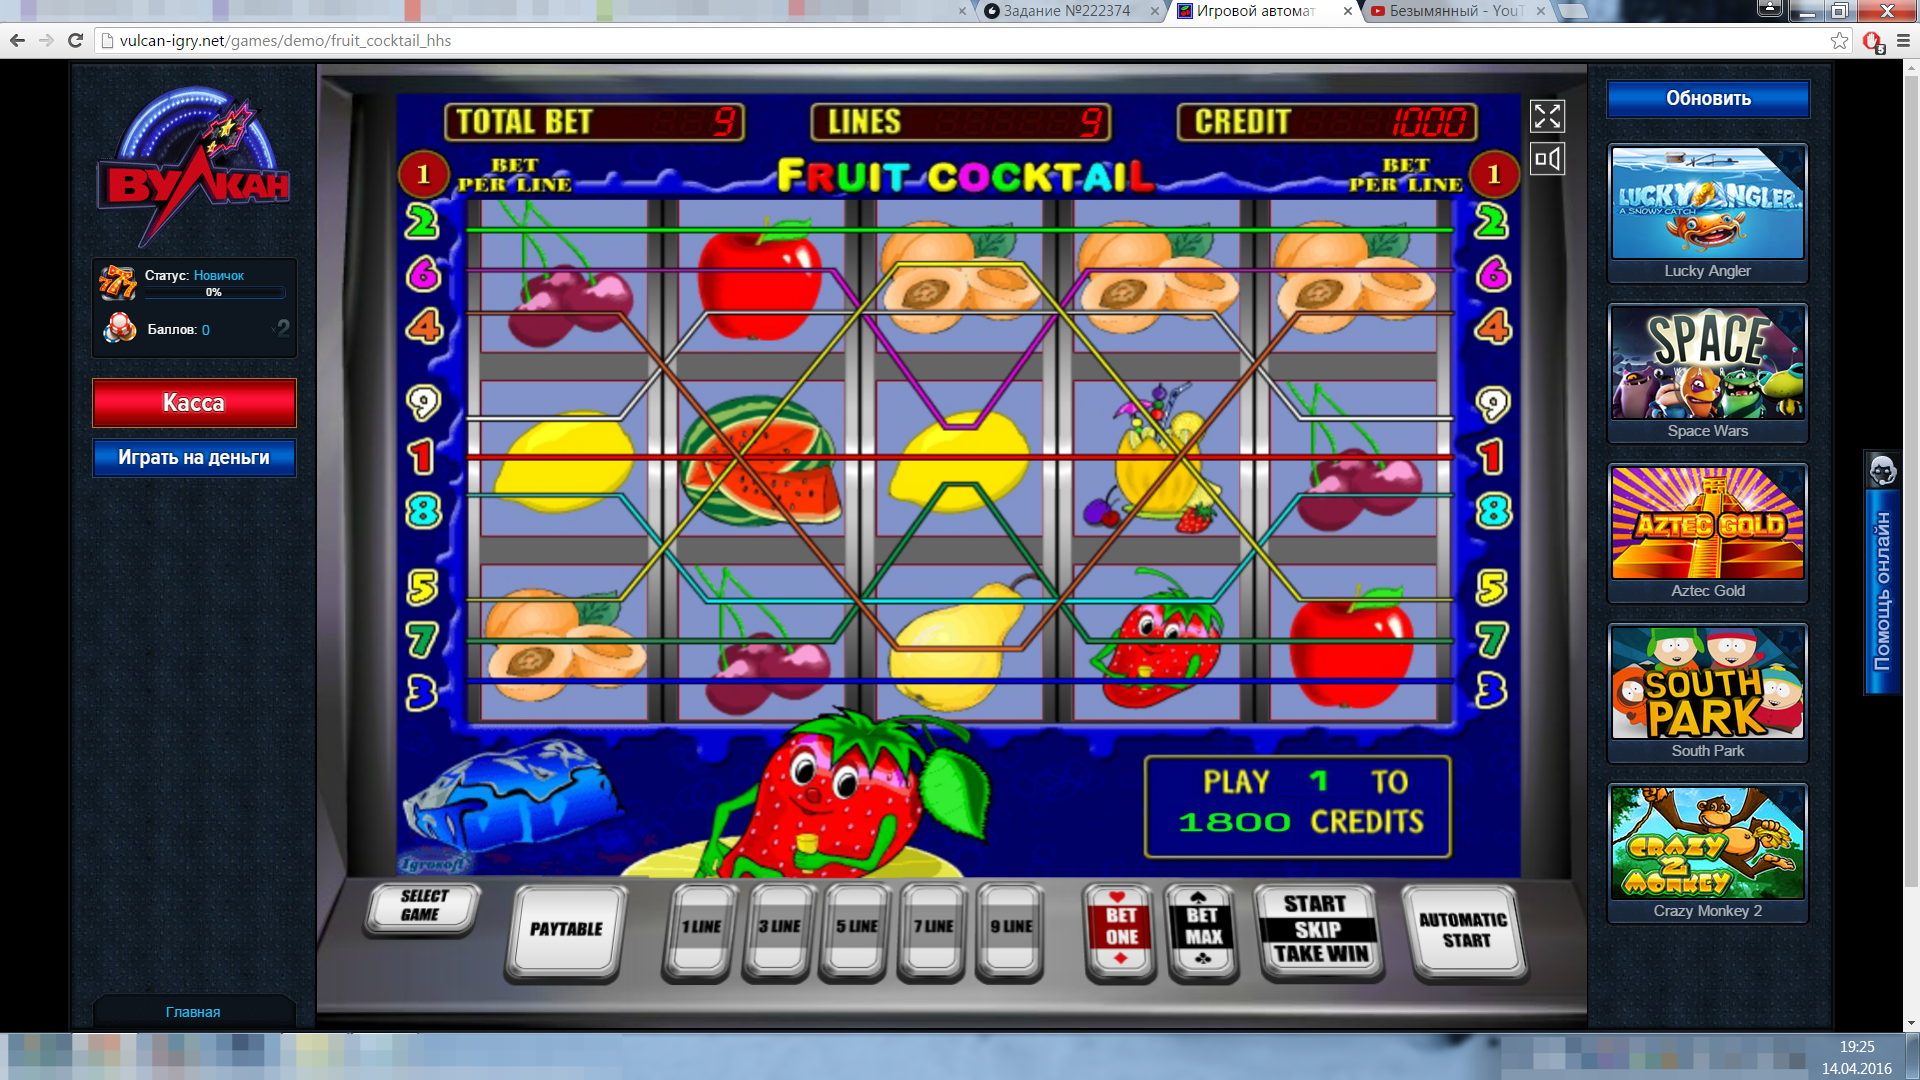 Бесплатно эмуляторы игровых автоматов онлайн бесплатно поиграть бесплатно в игровые автоматы клуб вулкан